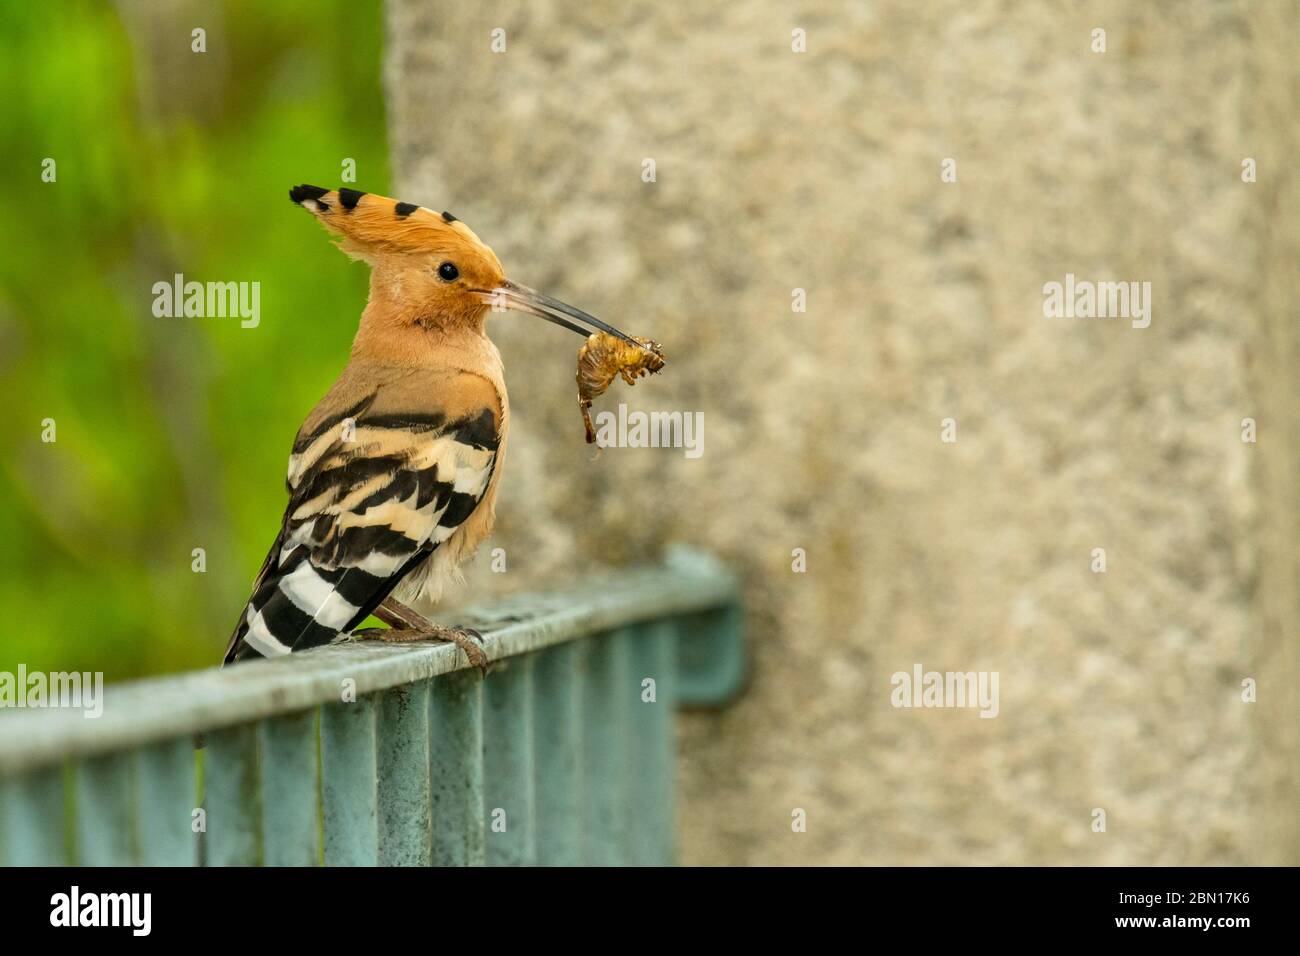 Un pájaro Hoopoe encaramado en la parte superior de una puerta del jardín, Provenza, Francia Foto de stock